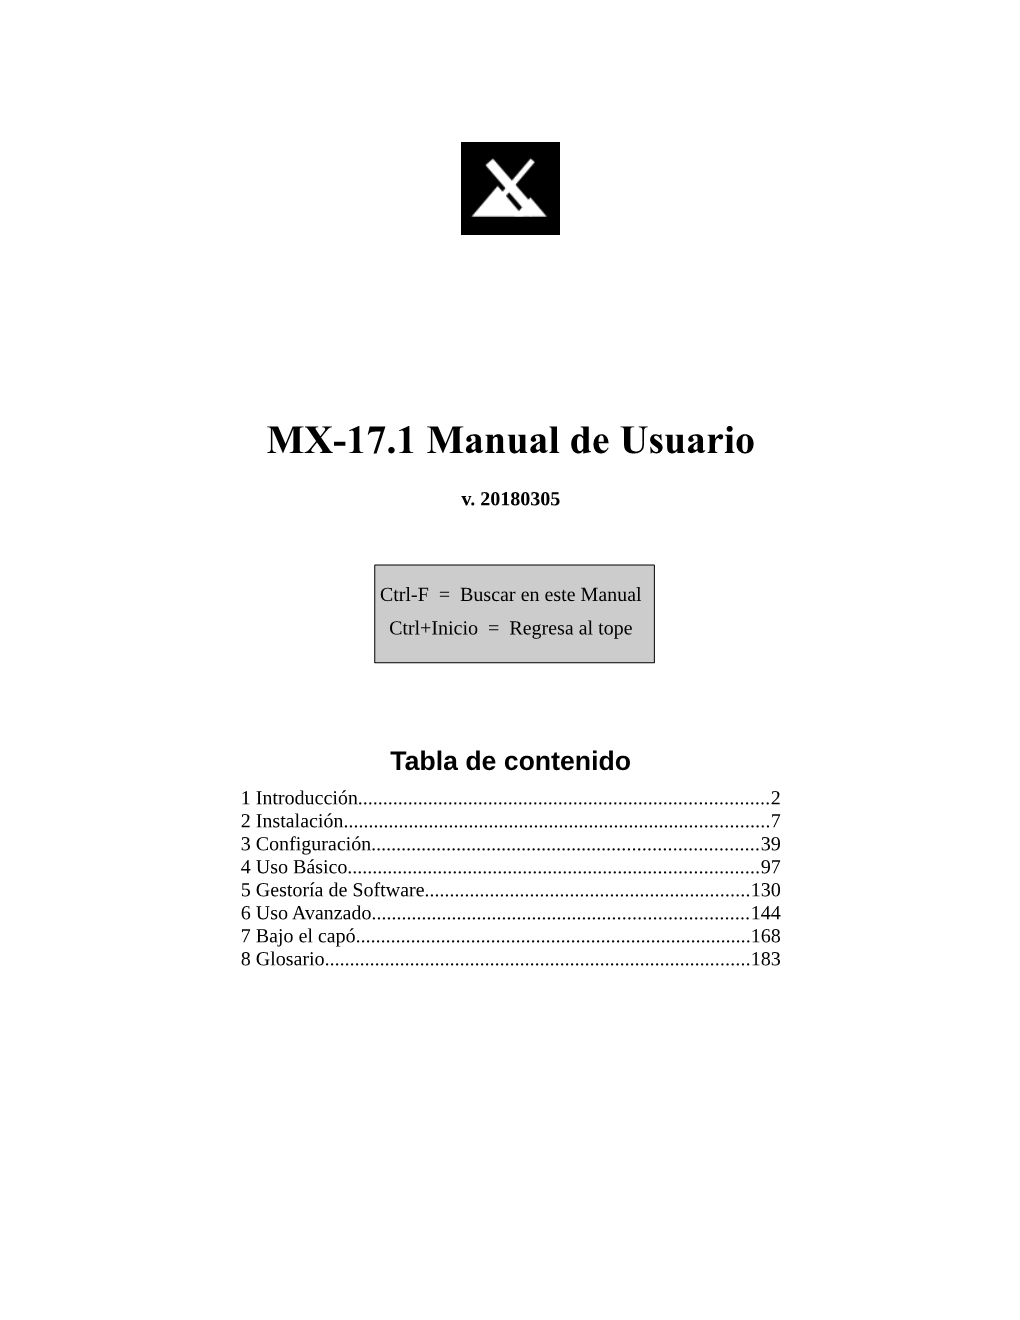 MX-17.1 Manual De Usuario